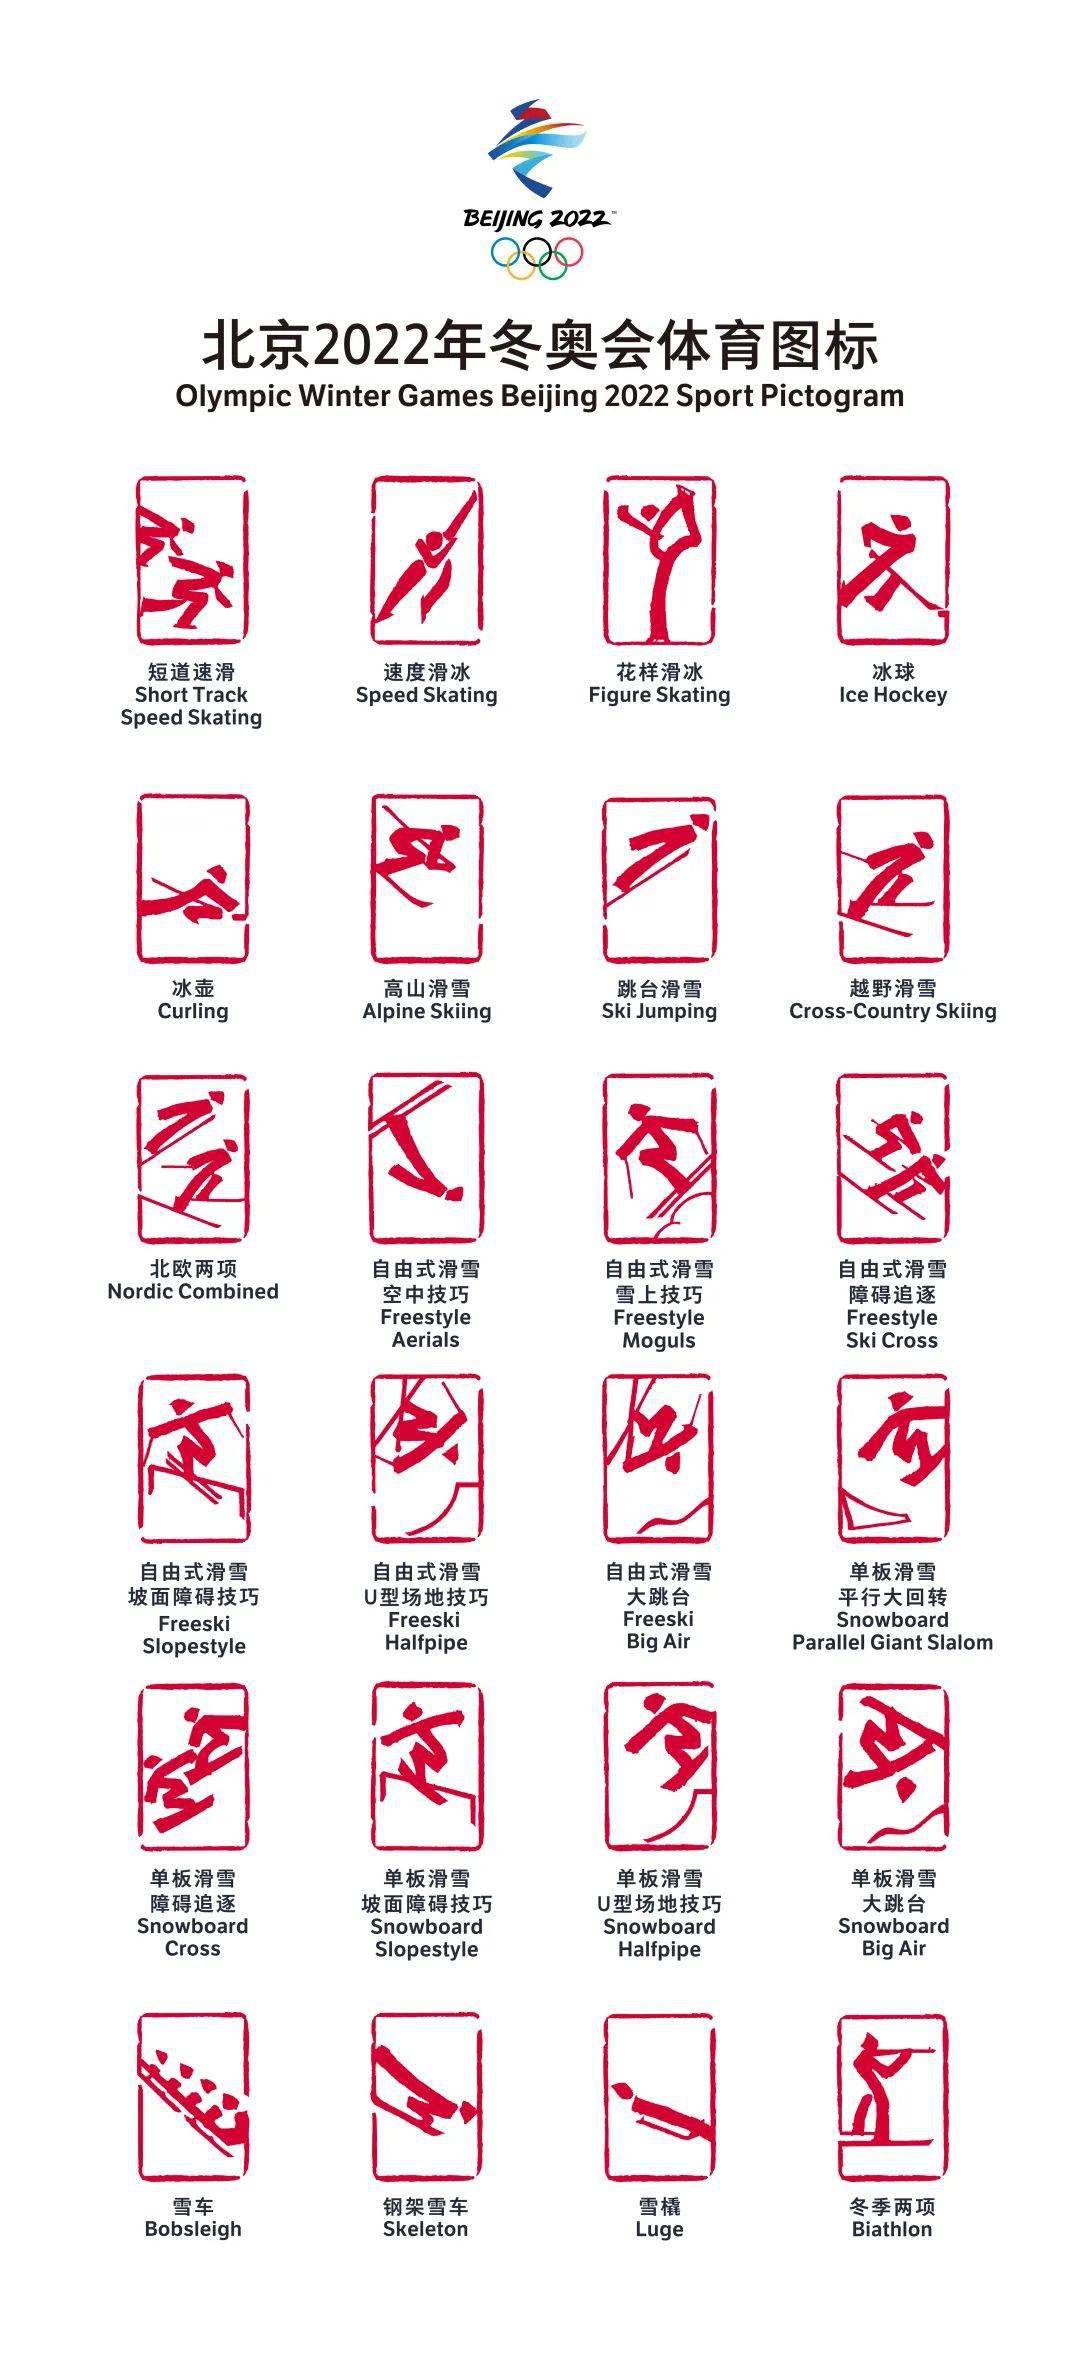 中国印章惊艳世界的北京2022年冬奥会和冬残奥会体育图标